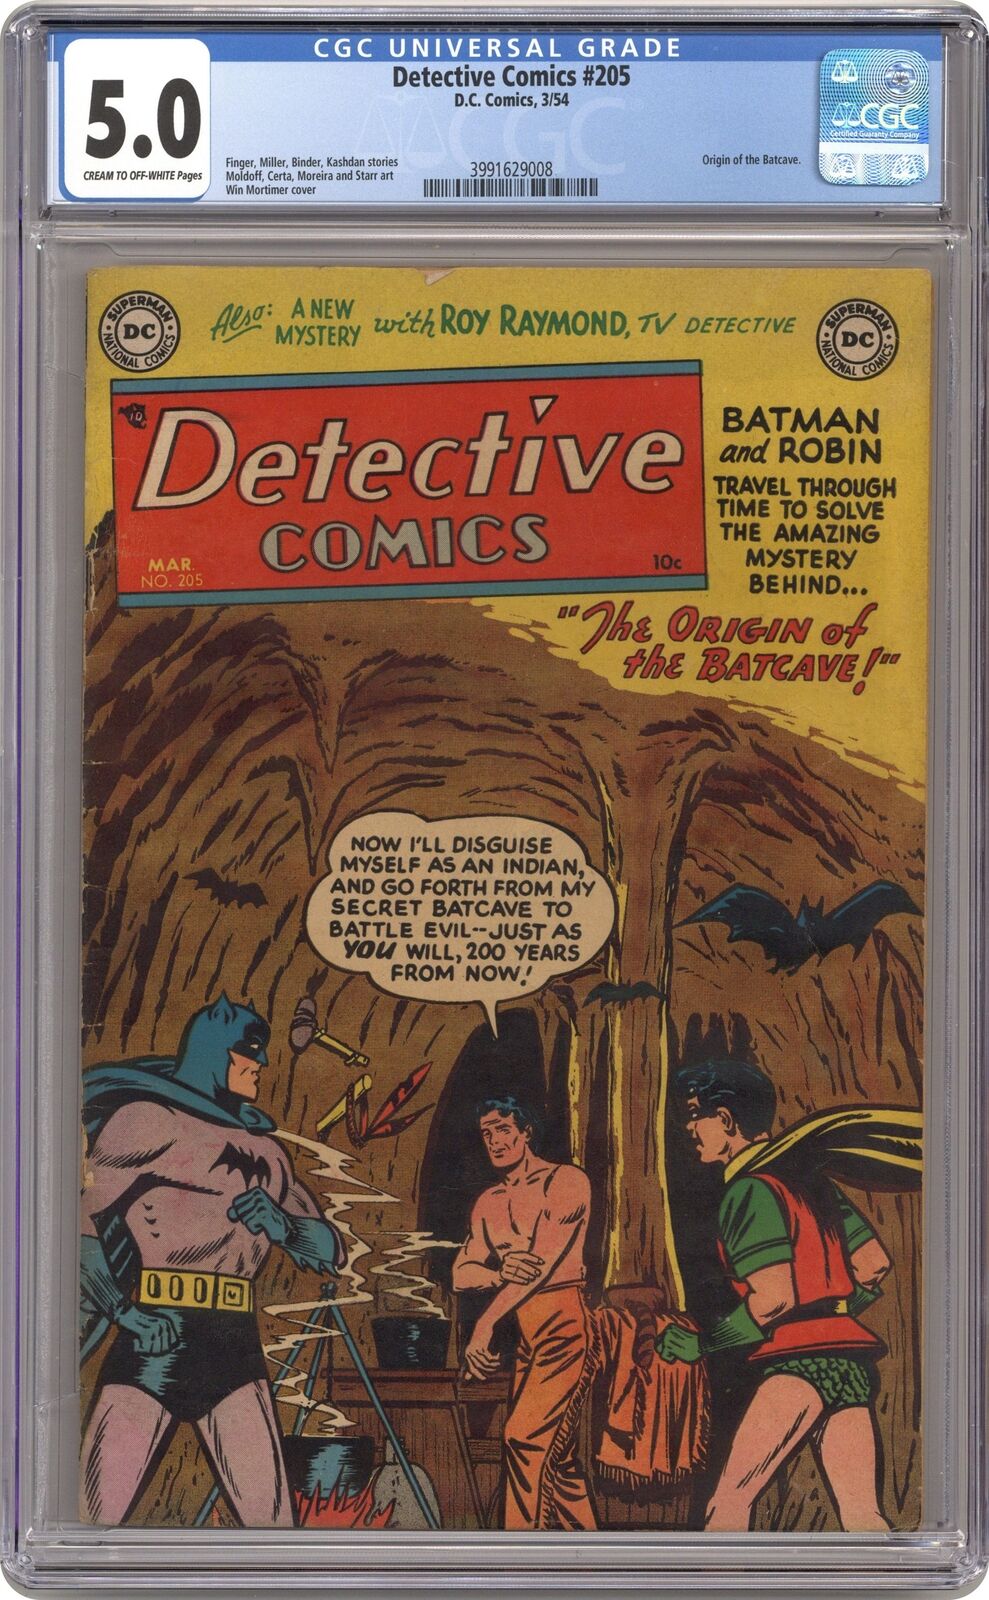 Detective Comics #205 CGC 5.0 1954 3991629008 Origin of the Batcave